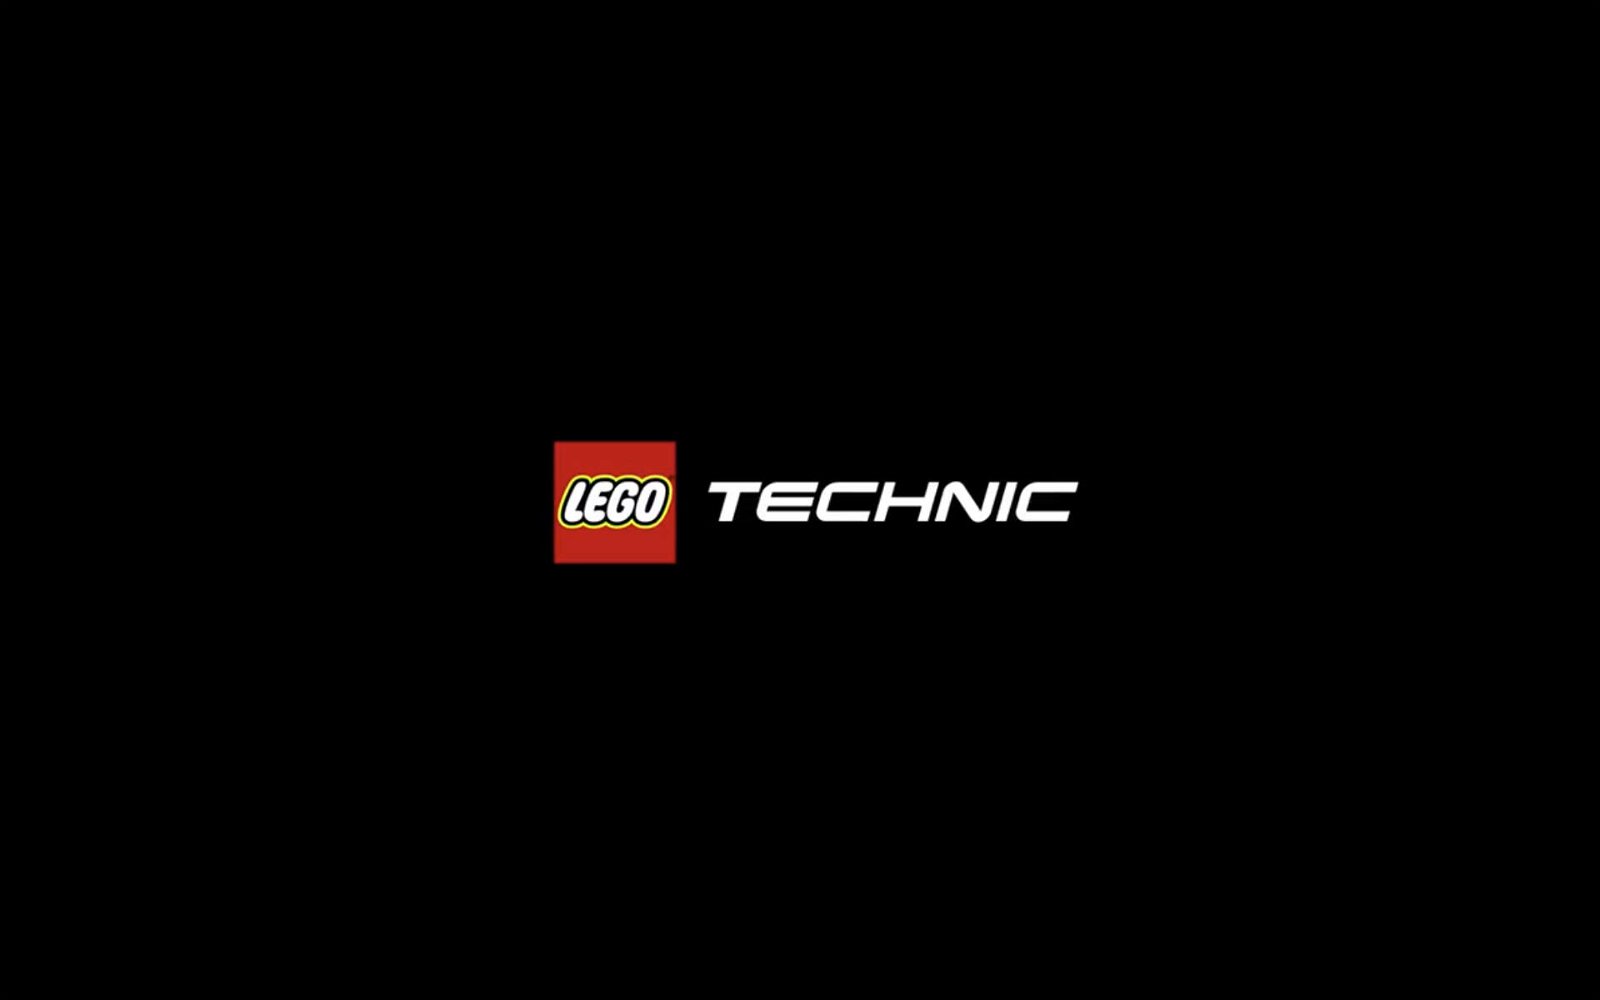 Immagine di LEGO: le novità LEGO Technic 2021